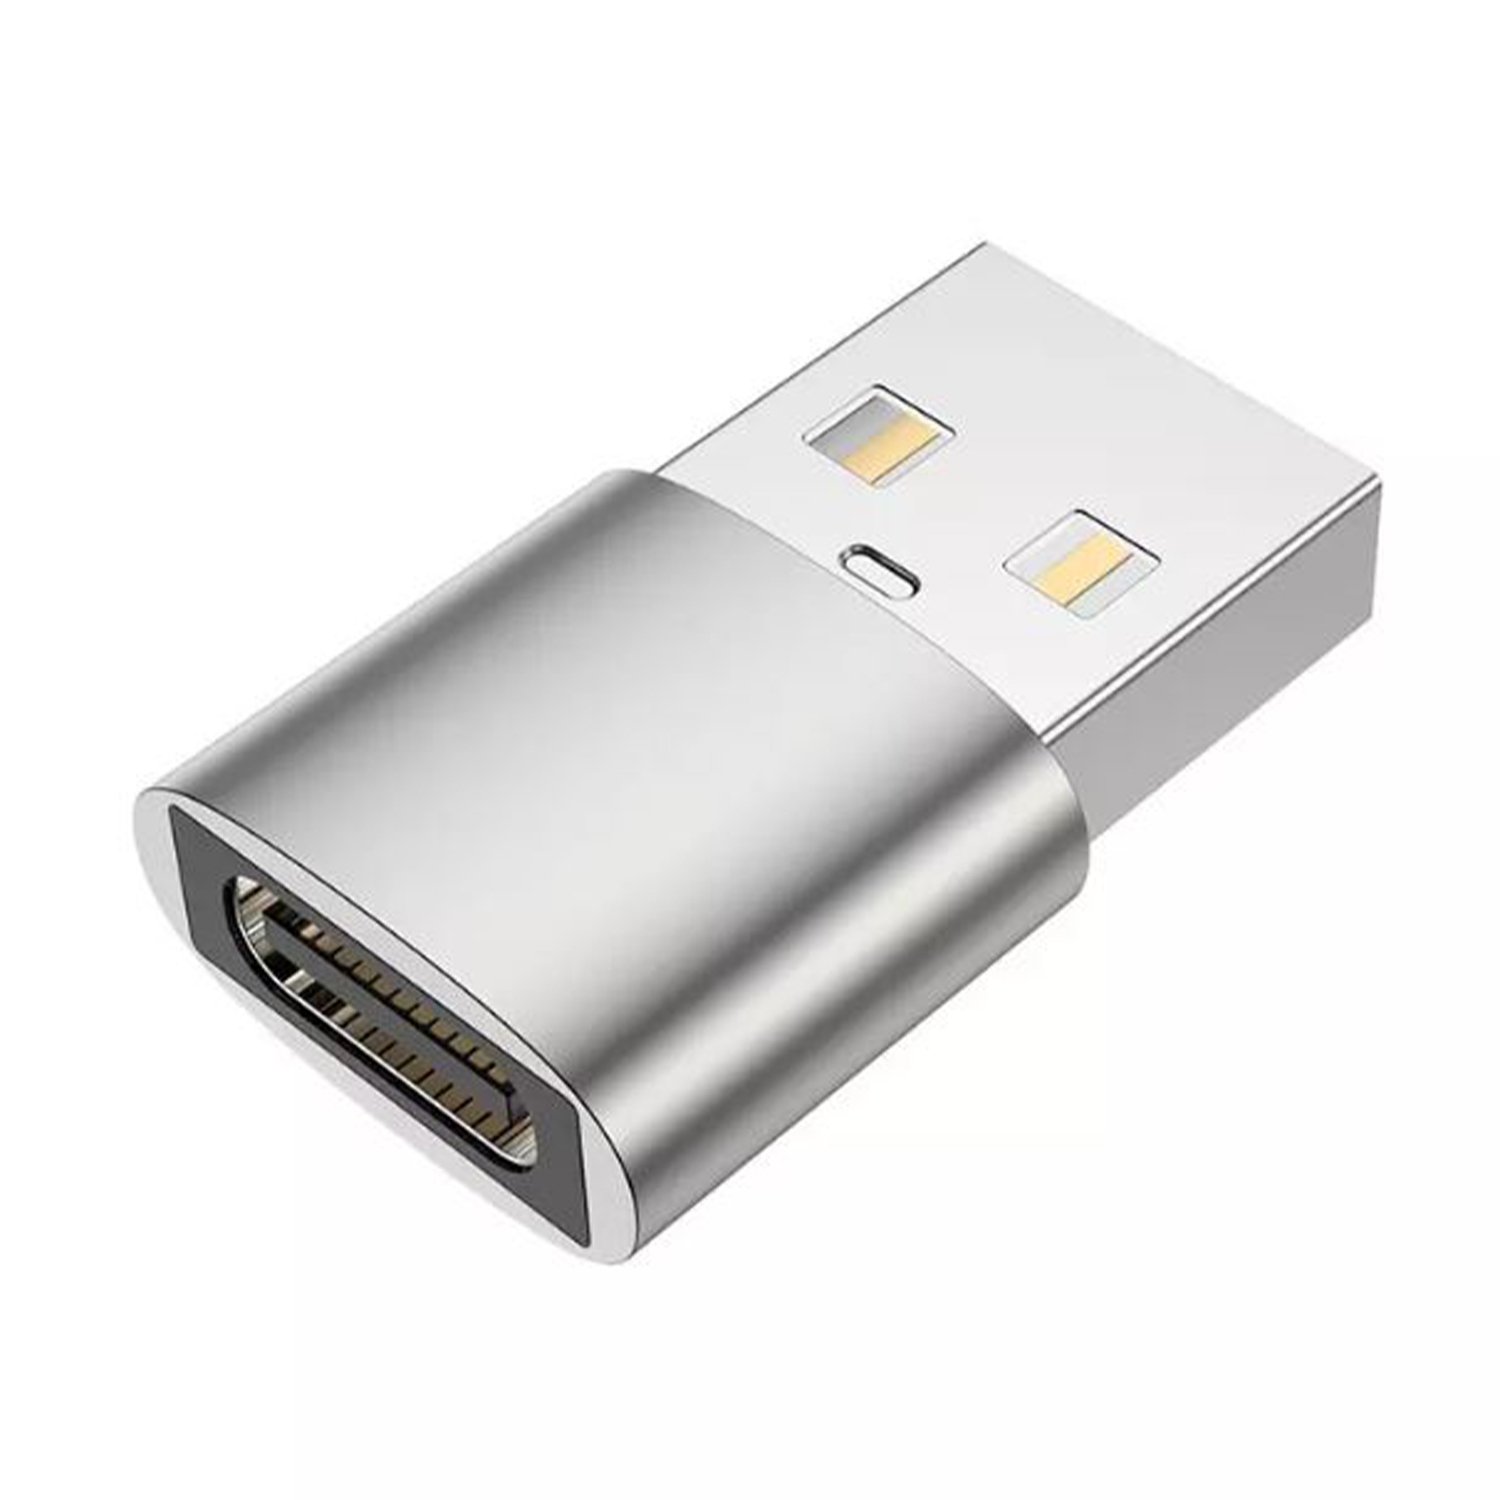 Microcase 2.4A Type-C to USB Çevirici Adaptör - AL2947